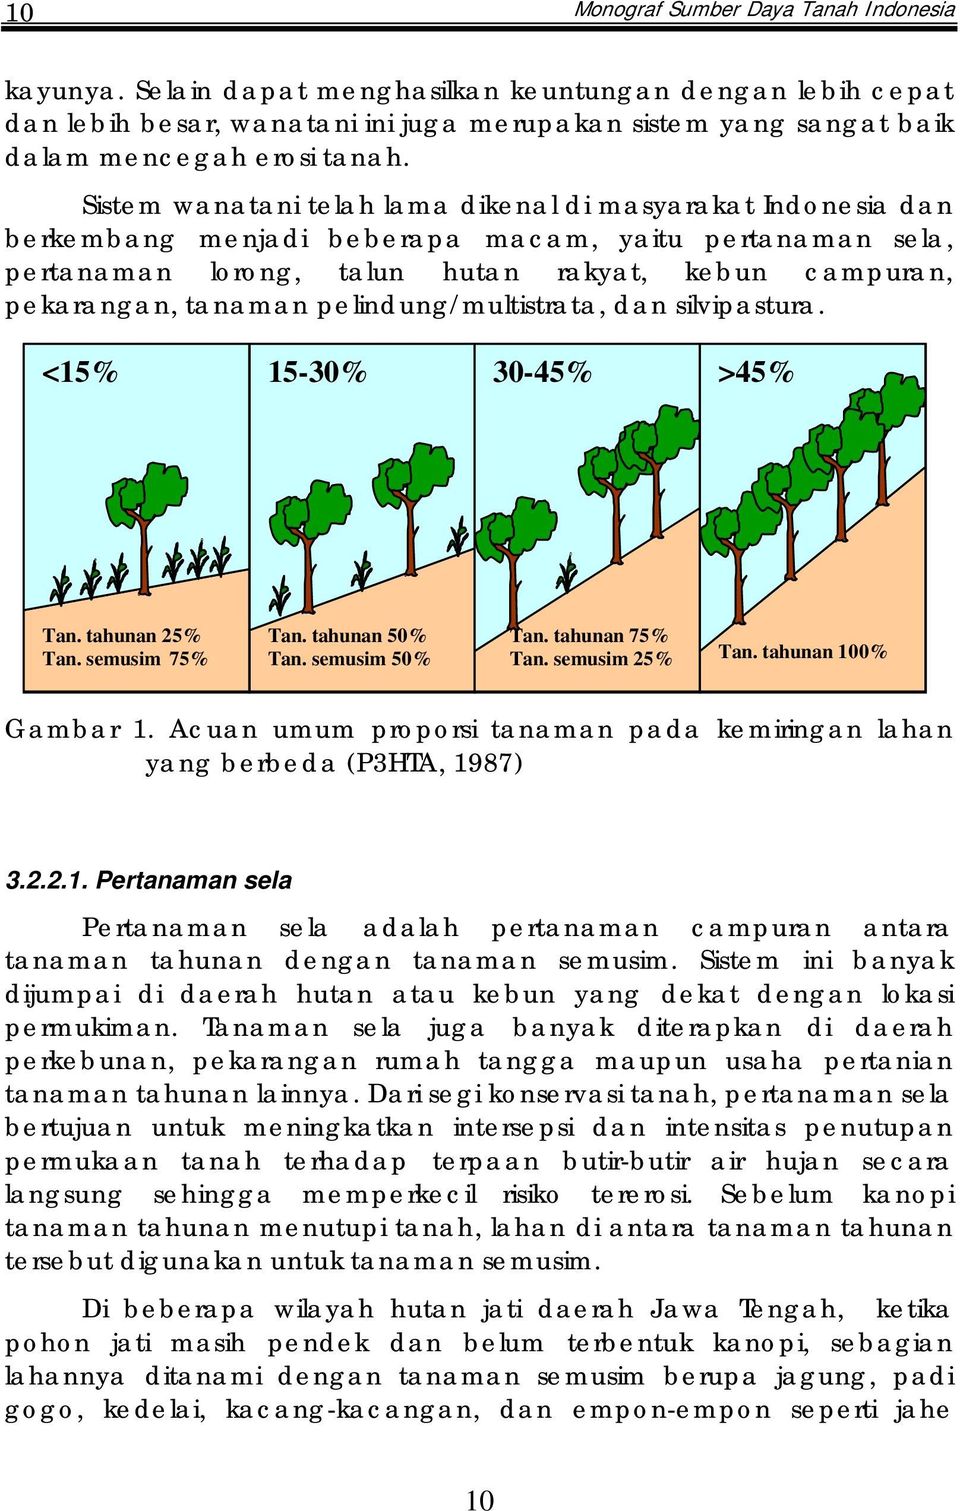 Sistem wanatani telah lama dikenal di masyarakat Indonesia dan berkembang menjadi beberapa macam, yaitu pertanaman sela, pertanaman lorong, talun hutan rakyat, kebun campuran, pekarangan, tanaman